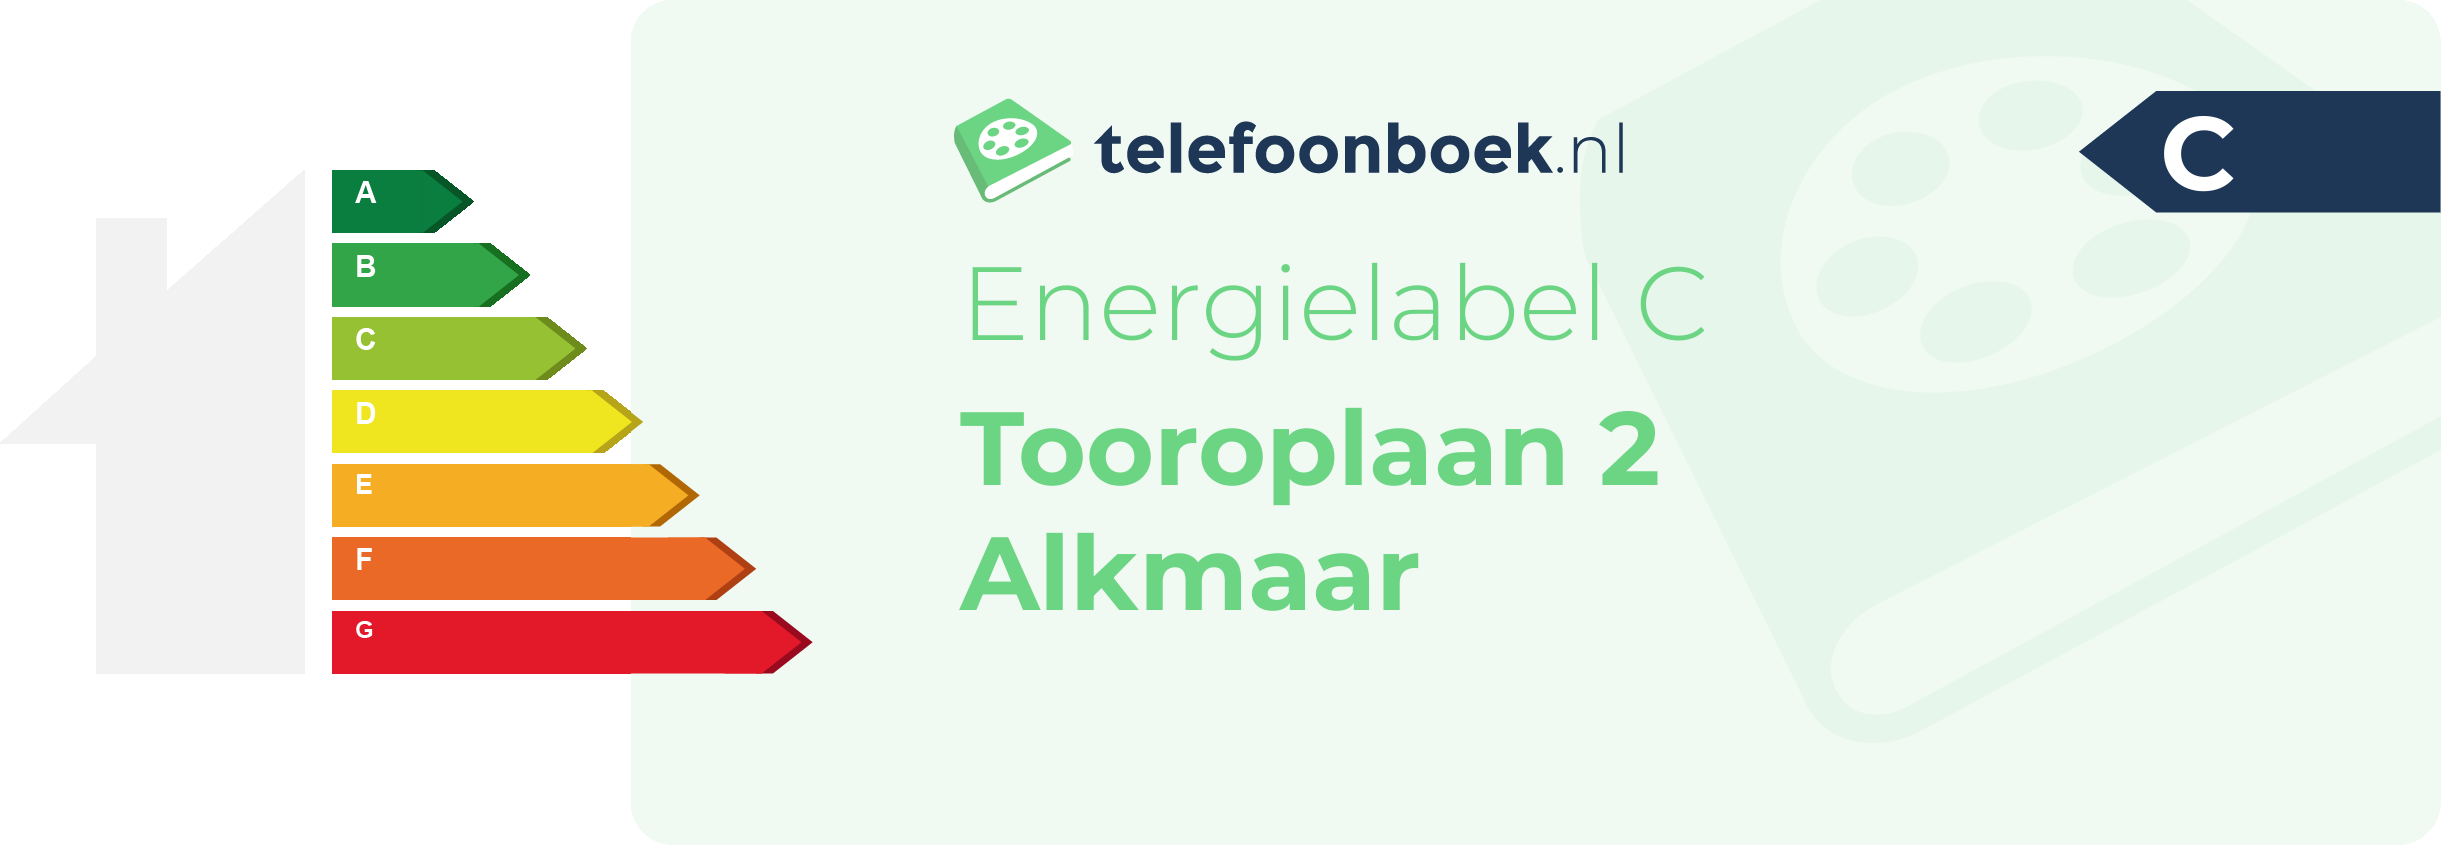 Energielabel Tooroplaan 2 Alkmaar